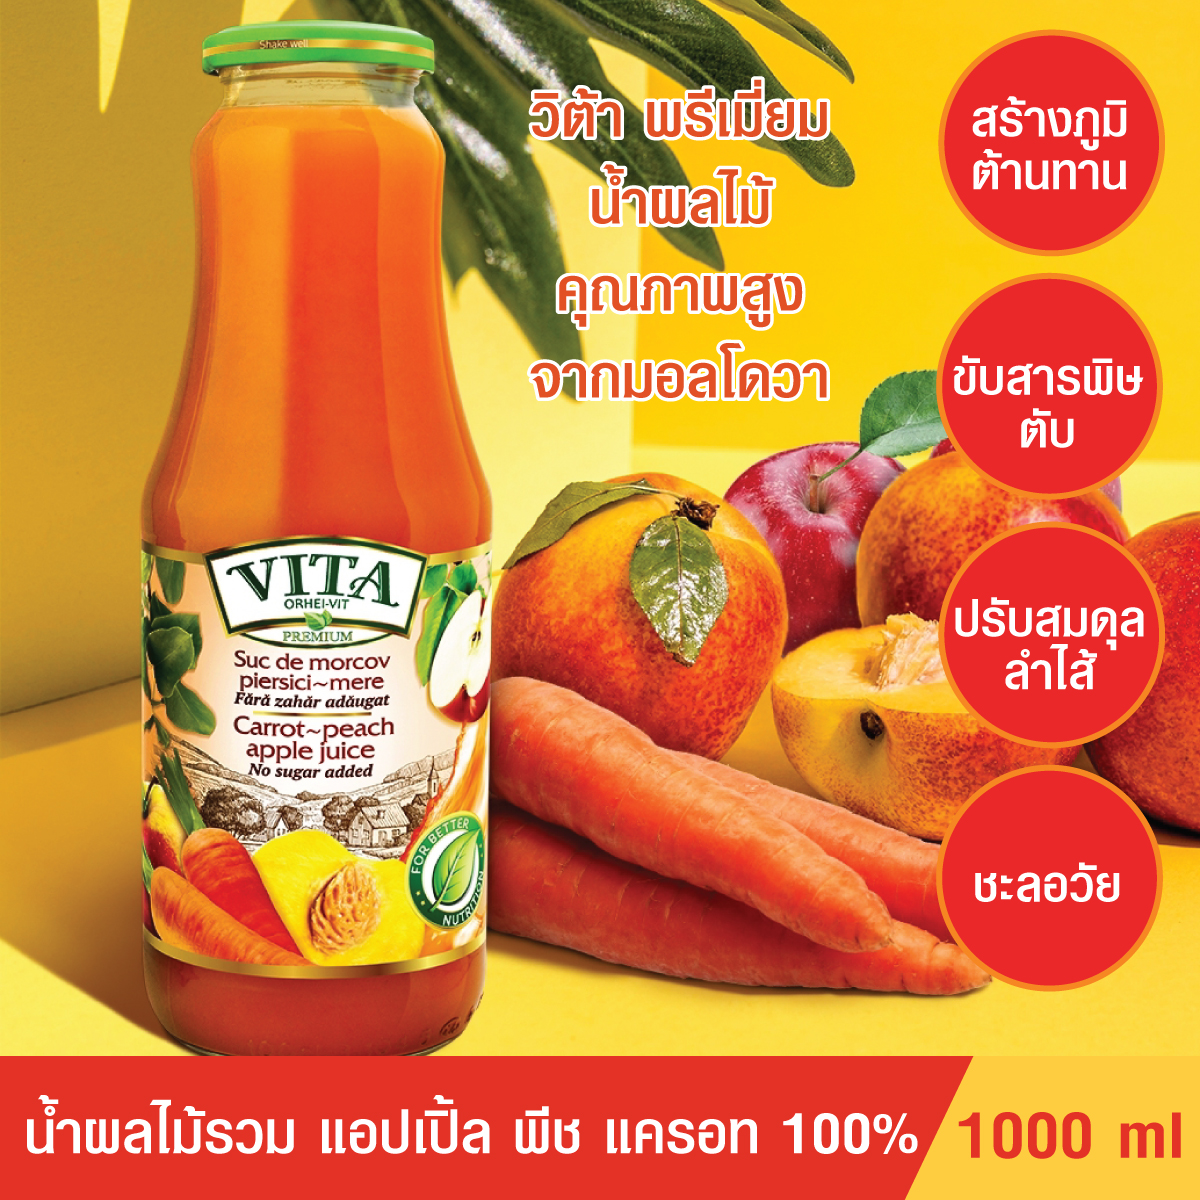 [น้ำแครอท+พีช+แอปเปิ้ล] น้ำผลไม้รวม 100% VITA Premium ปราศจาคน้ำตาล คุมน้ำหนัก ชะลอวัย นำเข้าจากประเทศมอลโดวา ขายดีในยุโรป